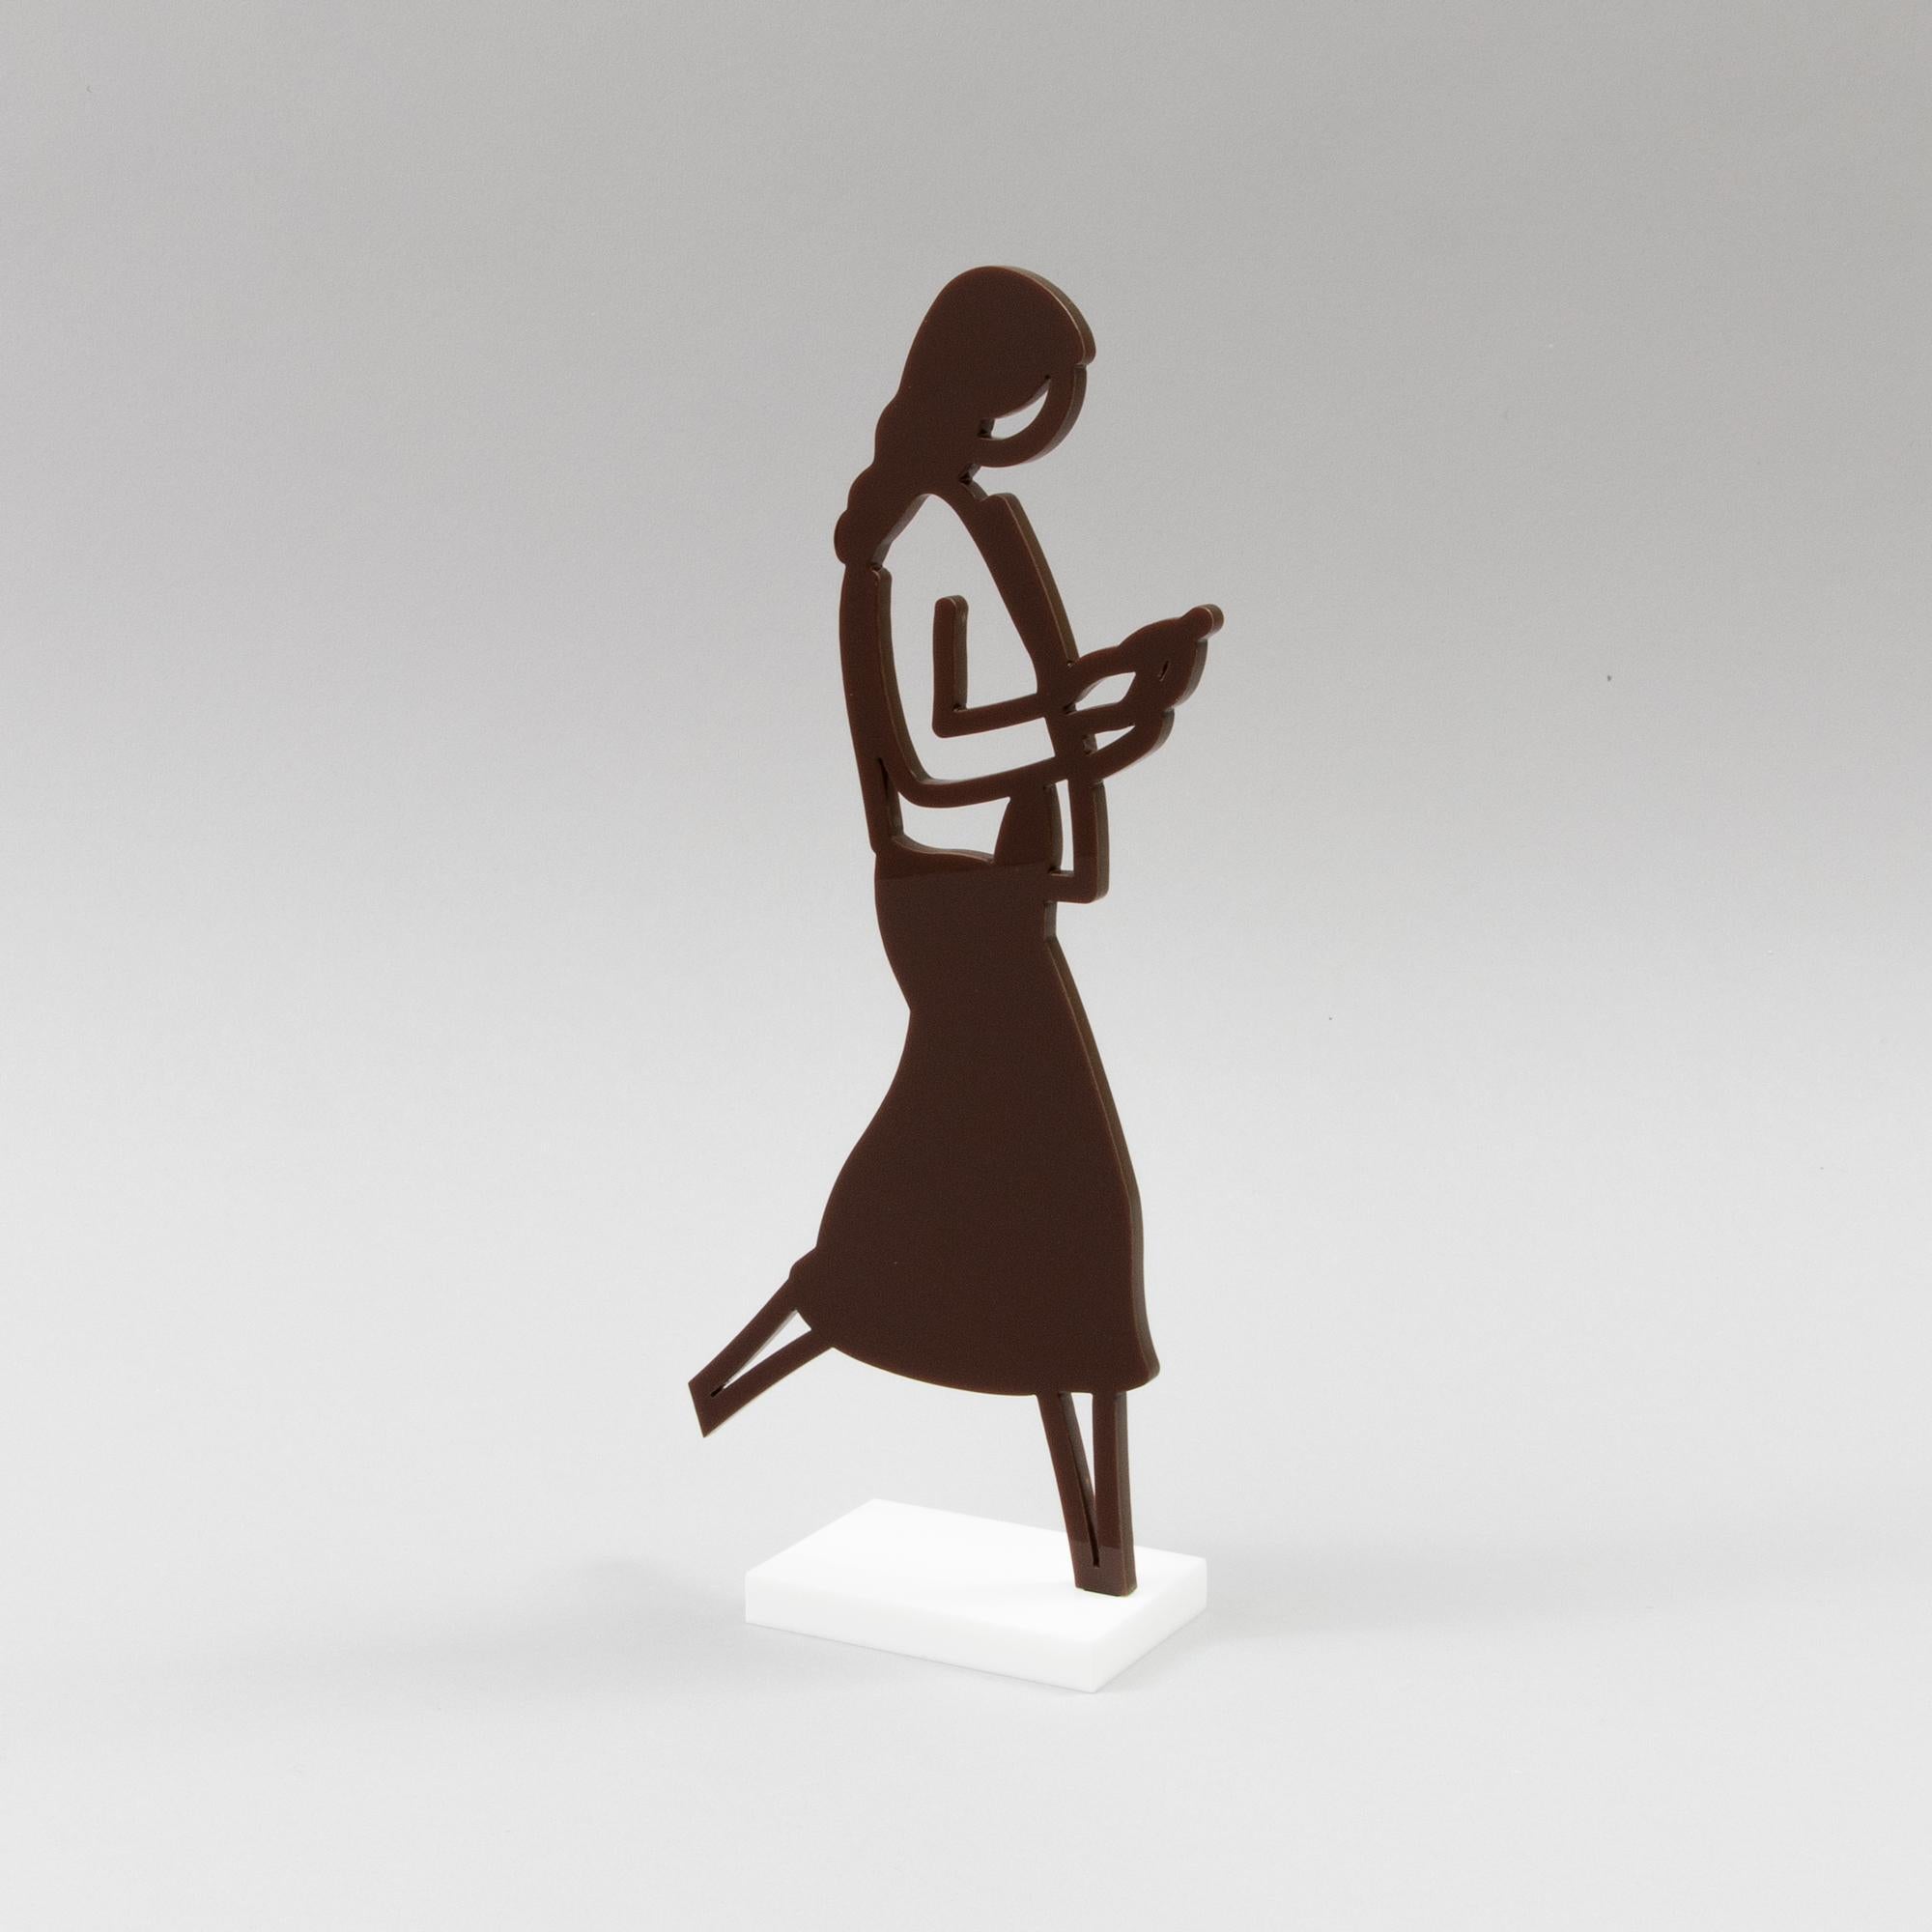 Julian Opie (Brite, geb. 1958)
Weiblicher Wanderer (Braun), 2020
Medium: Lasergeschnittenes Acryl, zweiteilige Statuette 
Maße der Figur: 24,3 x 12 x 0,5 cm
Maße des Sockels: 7,5 x 5 x 1 cm
Größe der Auflage: Offene Auflage, nicht signiert
Zustand: